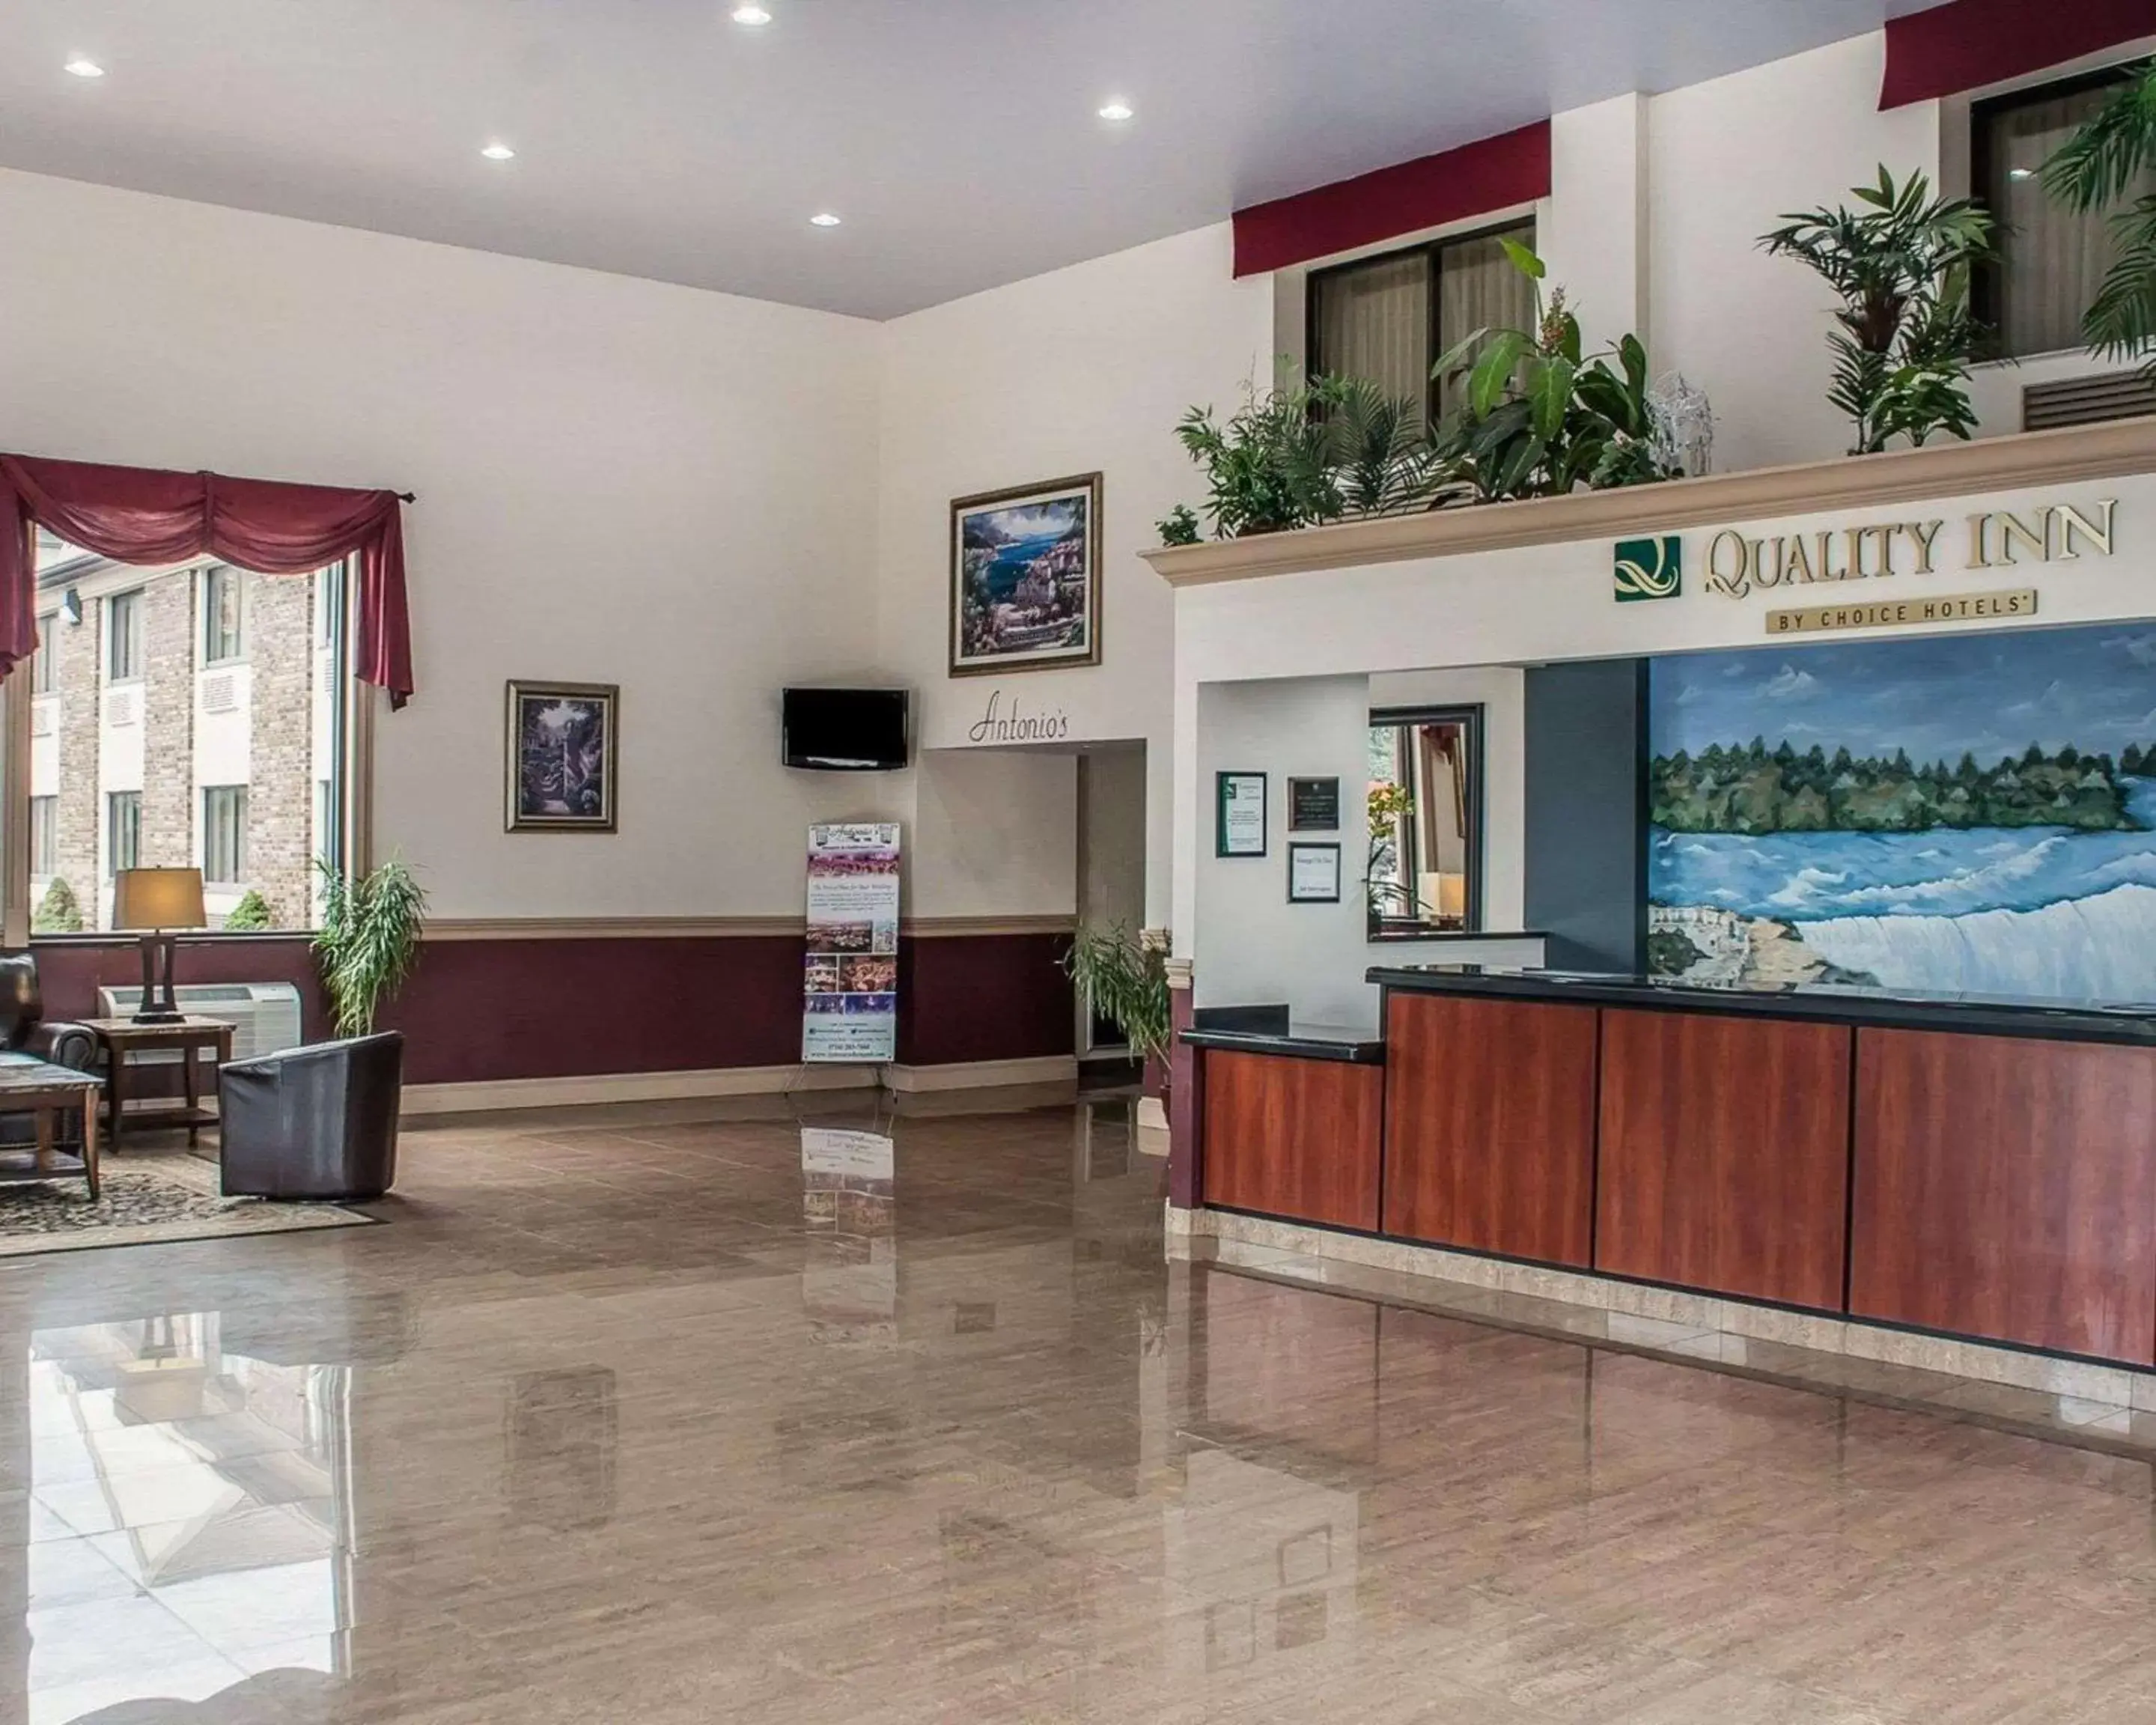 Lobby or reception, Lobby/Reception in Quality Inn Niagara Falls